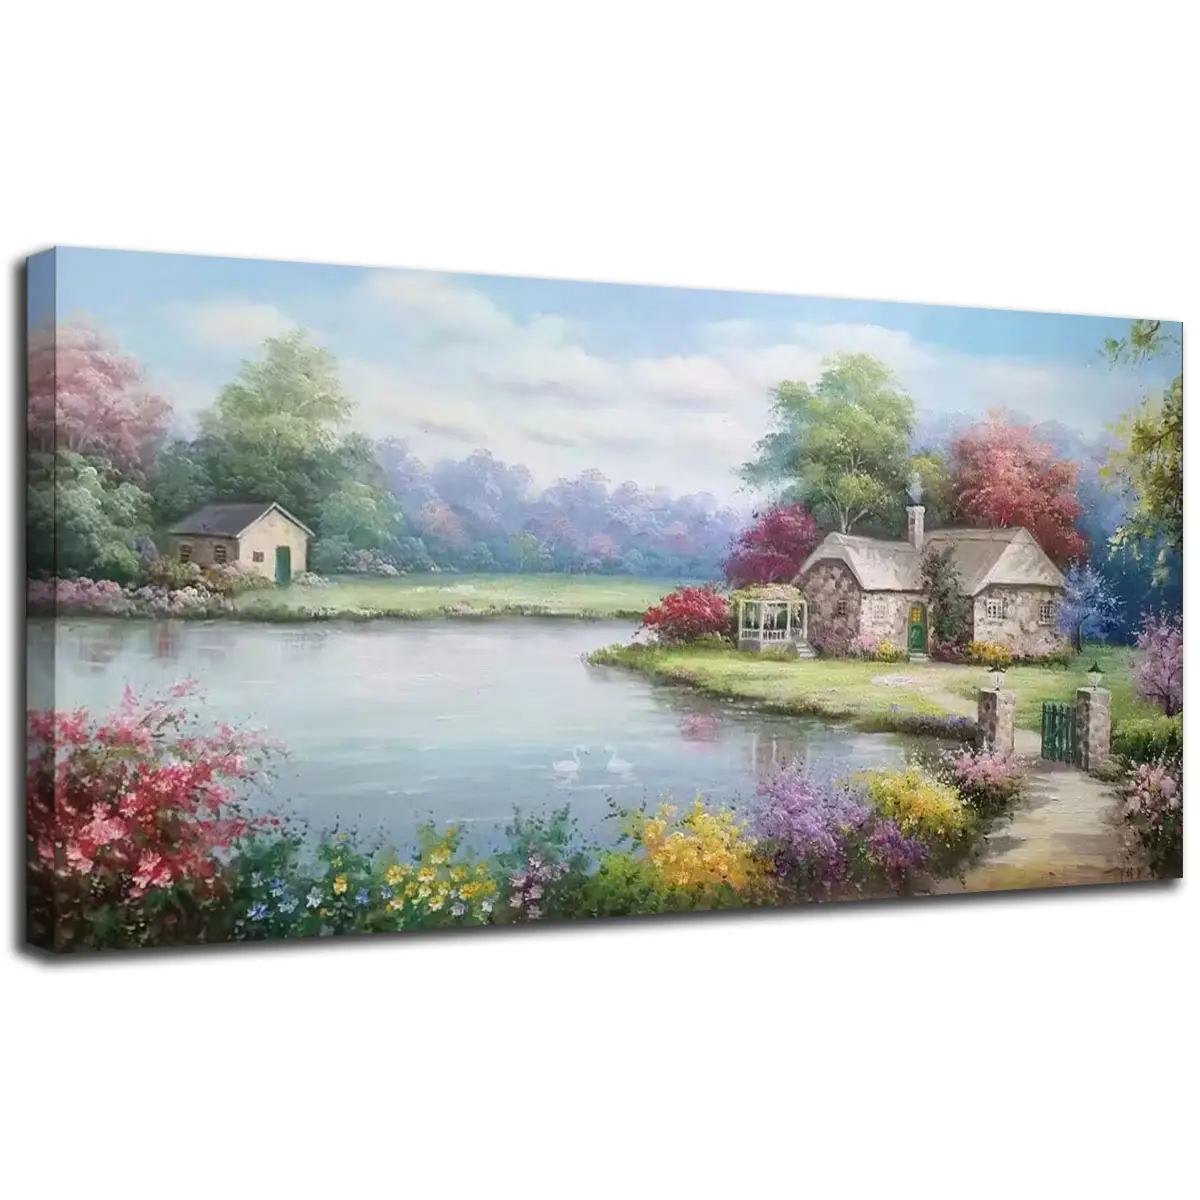 원래 예술 현대 토스카나 정원 장면 침실 홈 삽화에 대 한 벽걸이 캔버스에 손으로 그린 오션 오일 아트 100%